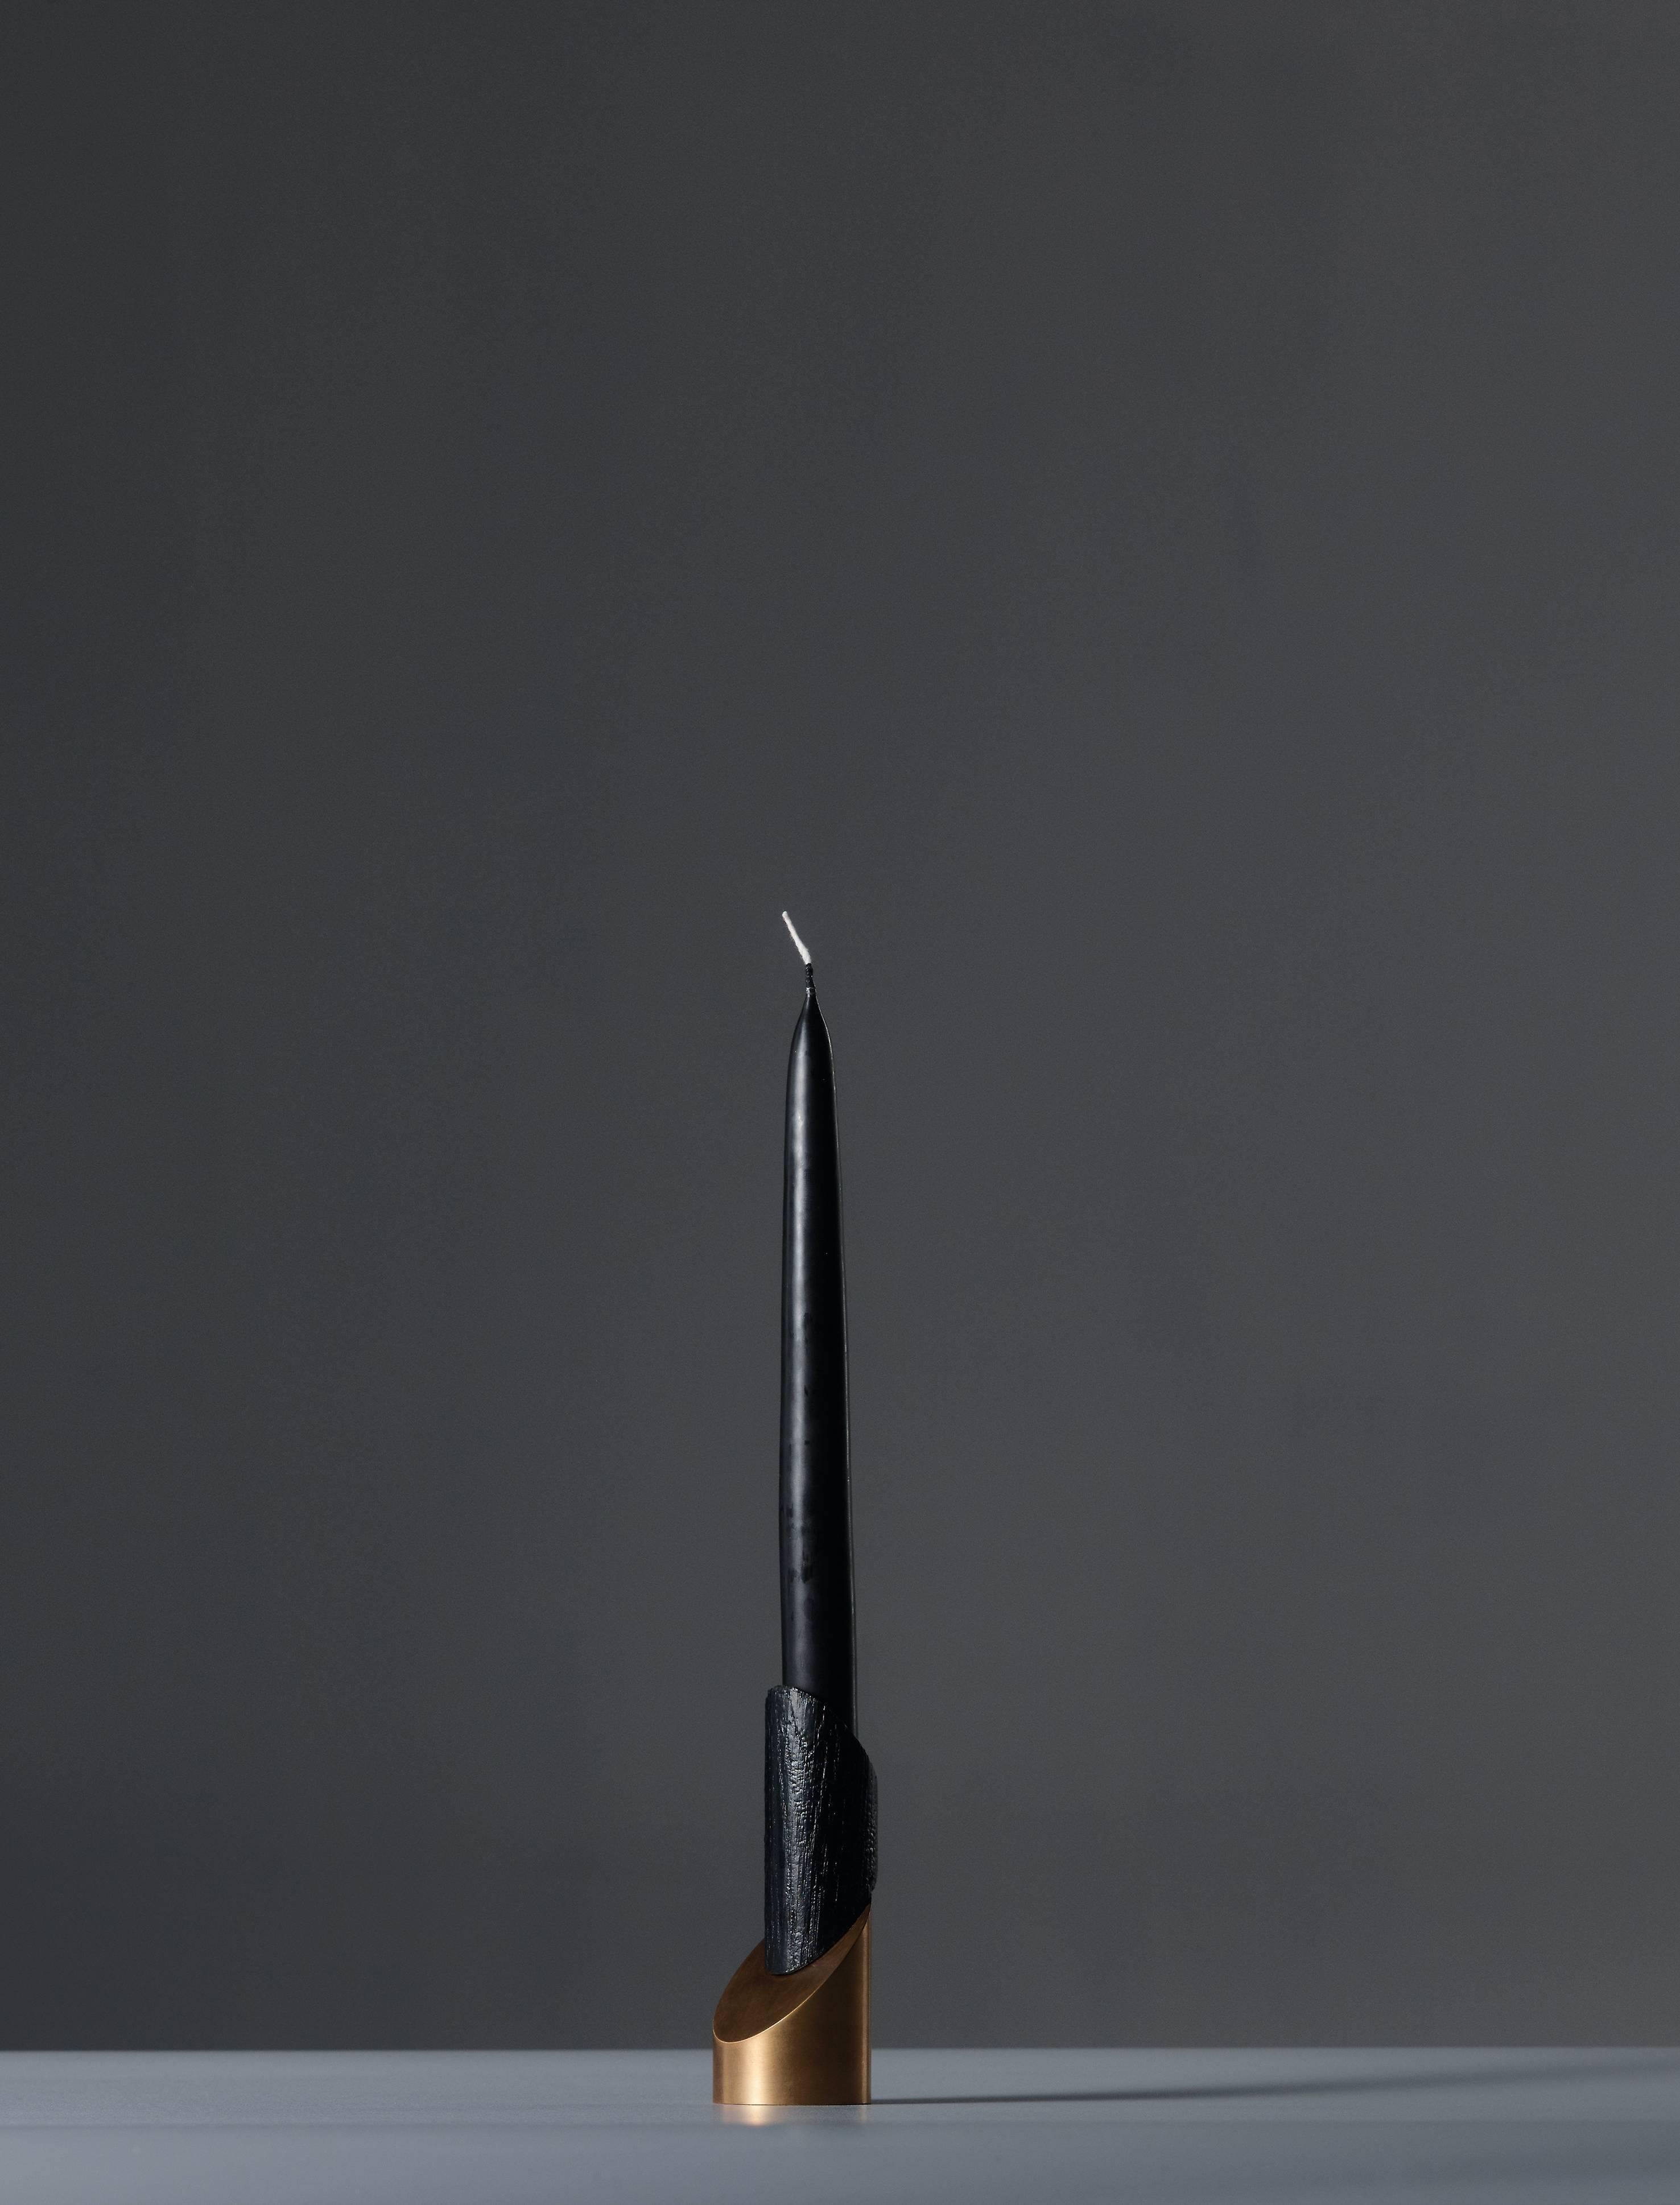 Bronze Asche zu Asche Kerzenhalter
Unterzeichnet William Guillon
Limitierte Auflage von 99 Stück
Signiert und nummeriert
Massive gebrannte Eiche / massive Bronze
Abmessungen: 13 x 5,6 x 5 cm (Höhe mit Kerze 35 cm)
Handgeschnitzt in